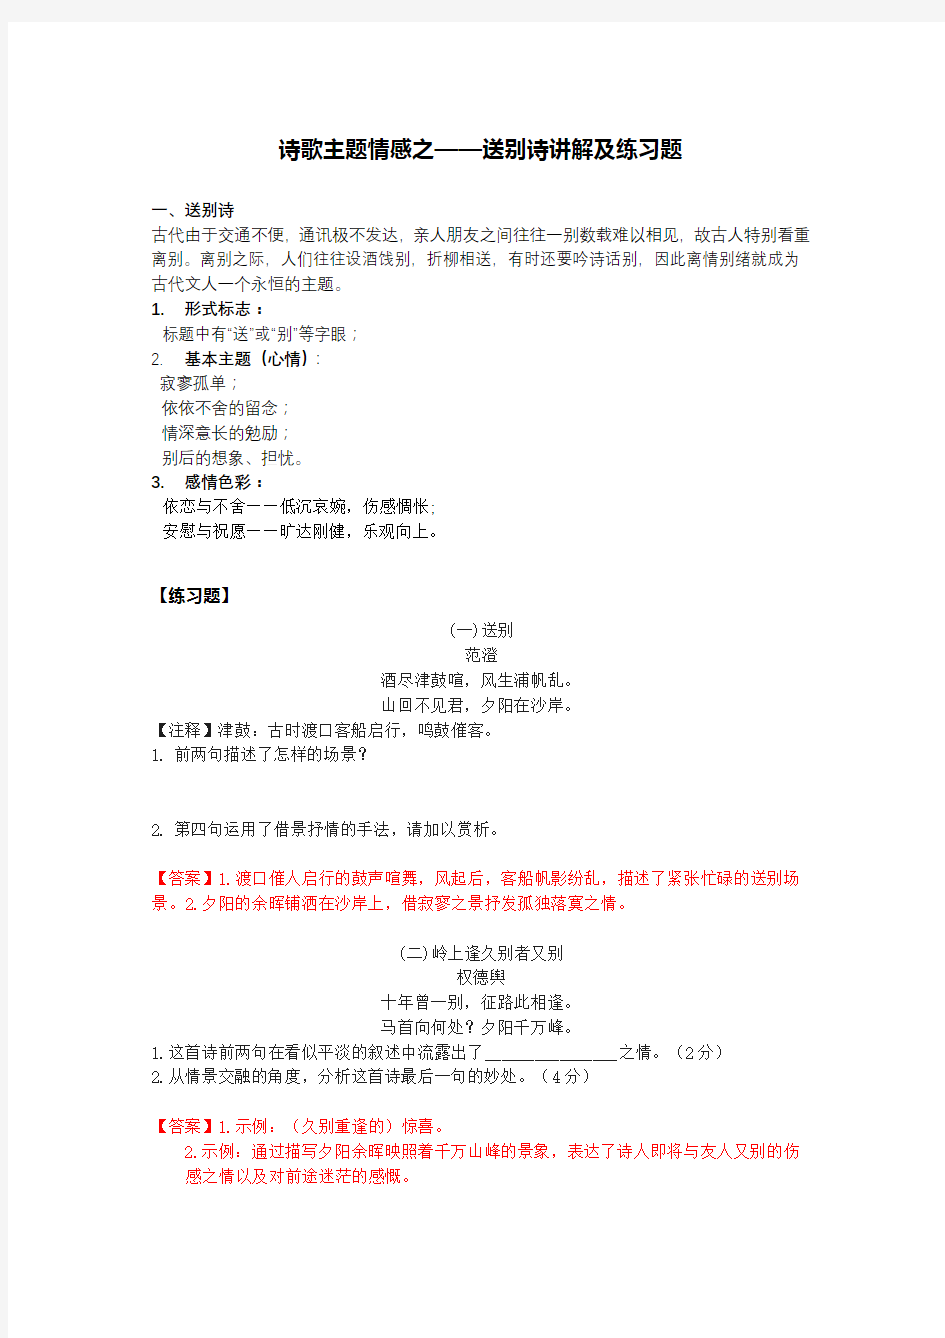 (完整版)初中语文诗歌鉴赏送别诗答案版